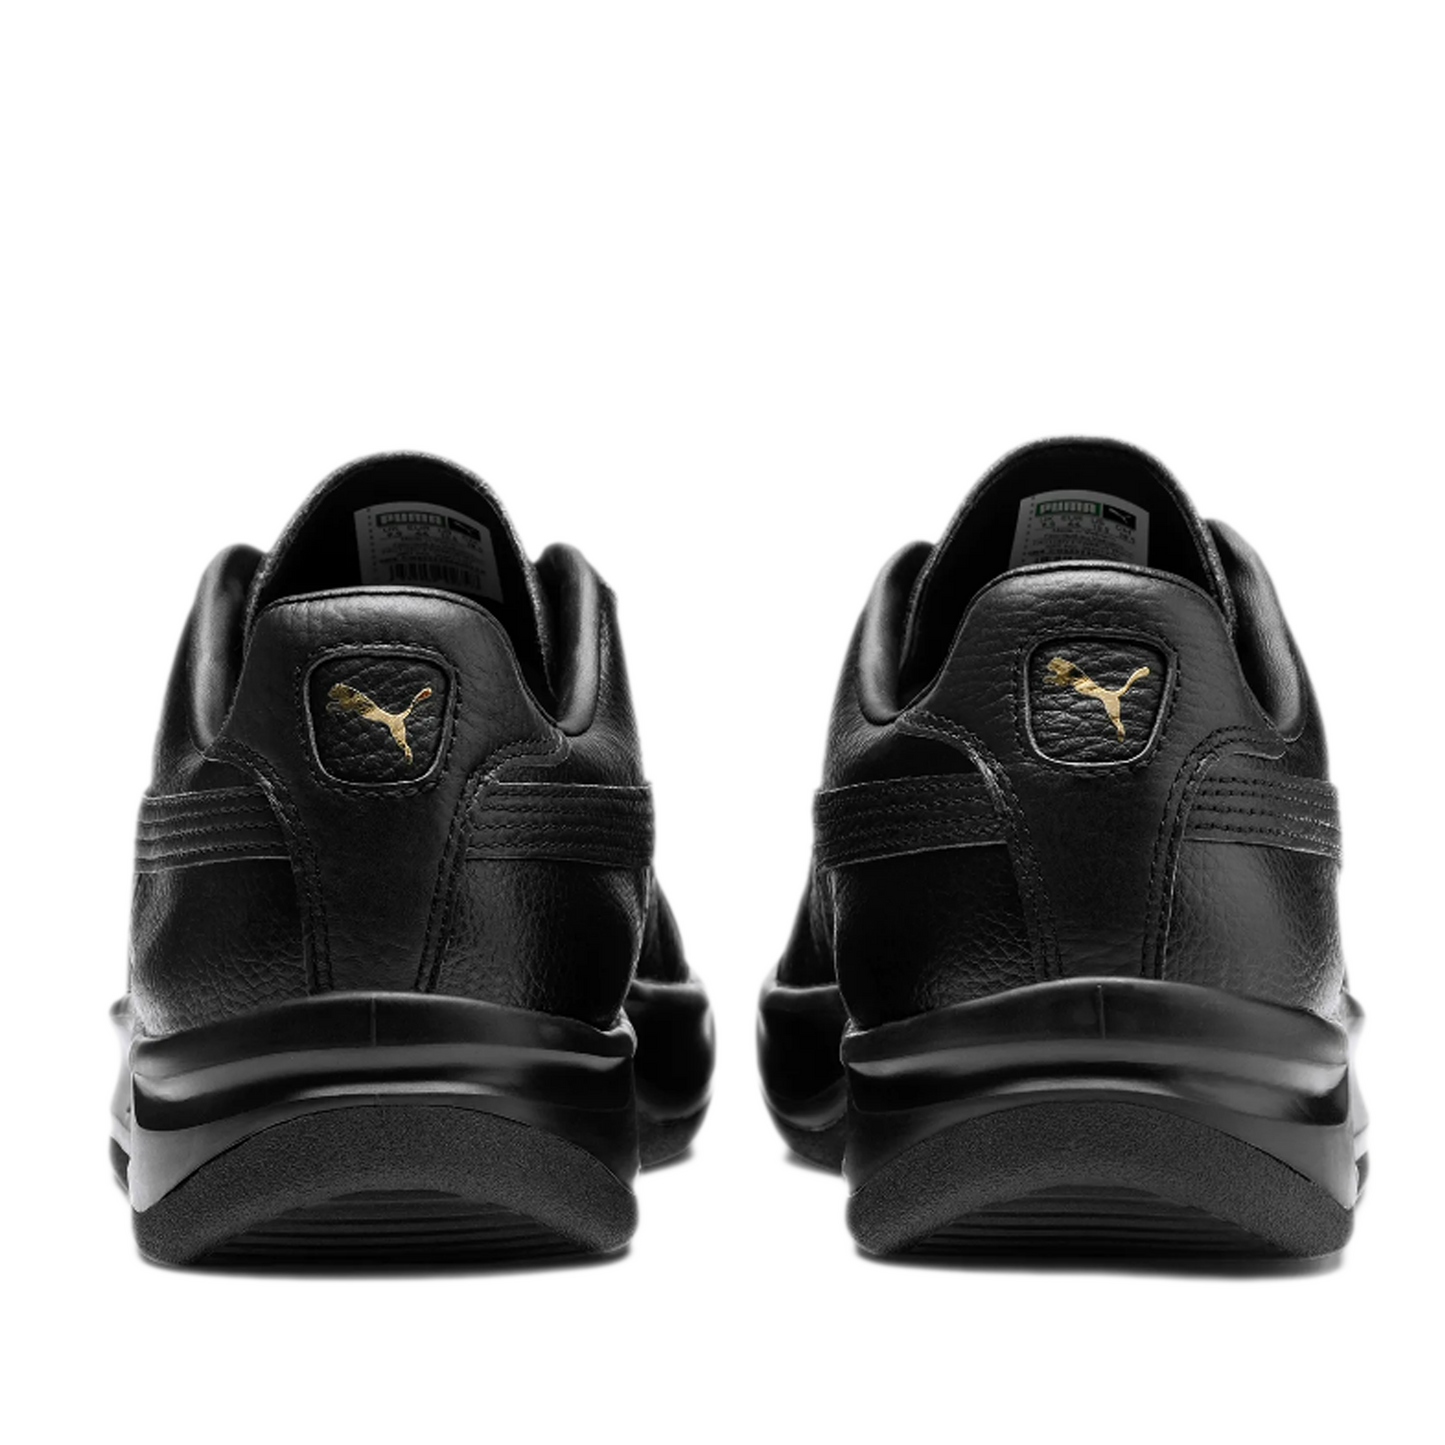 Men's Puma GV Special Shoes - Black